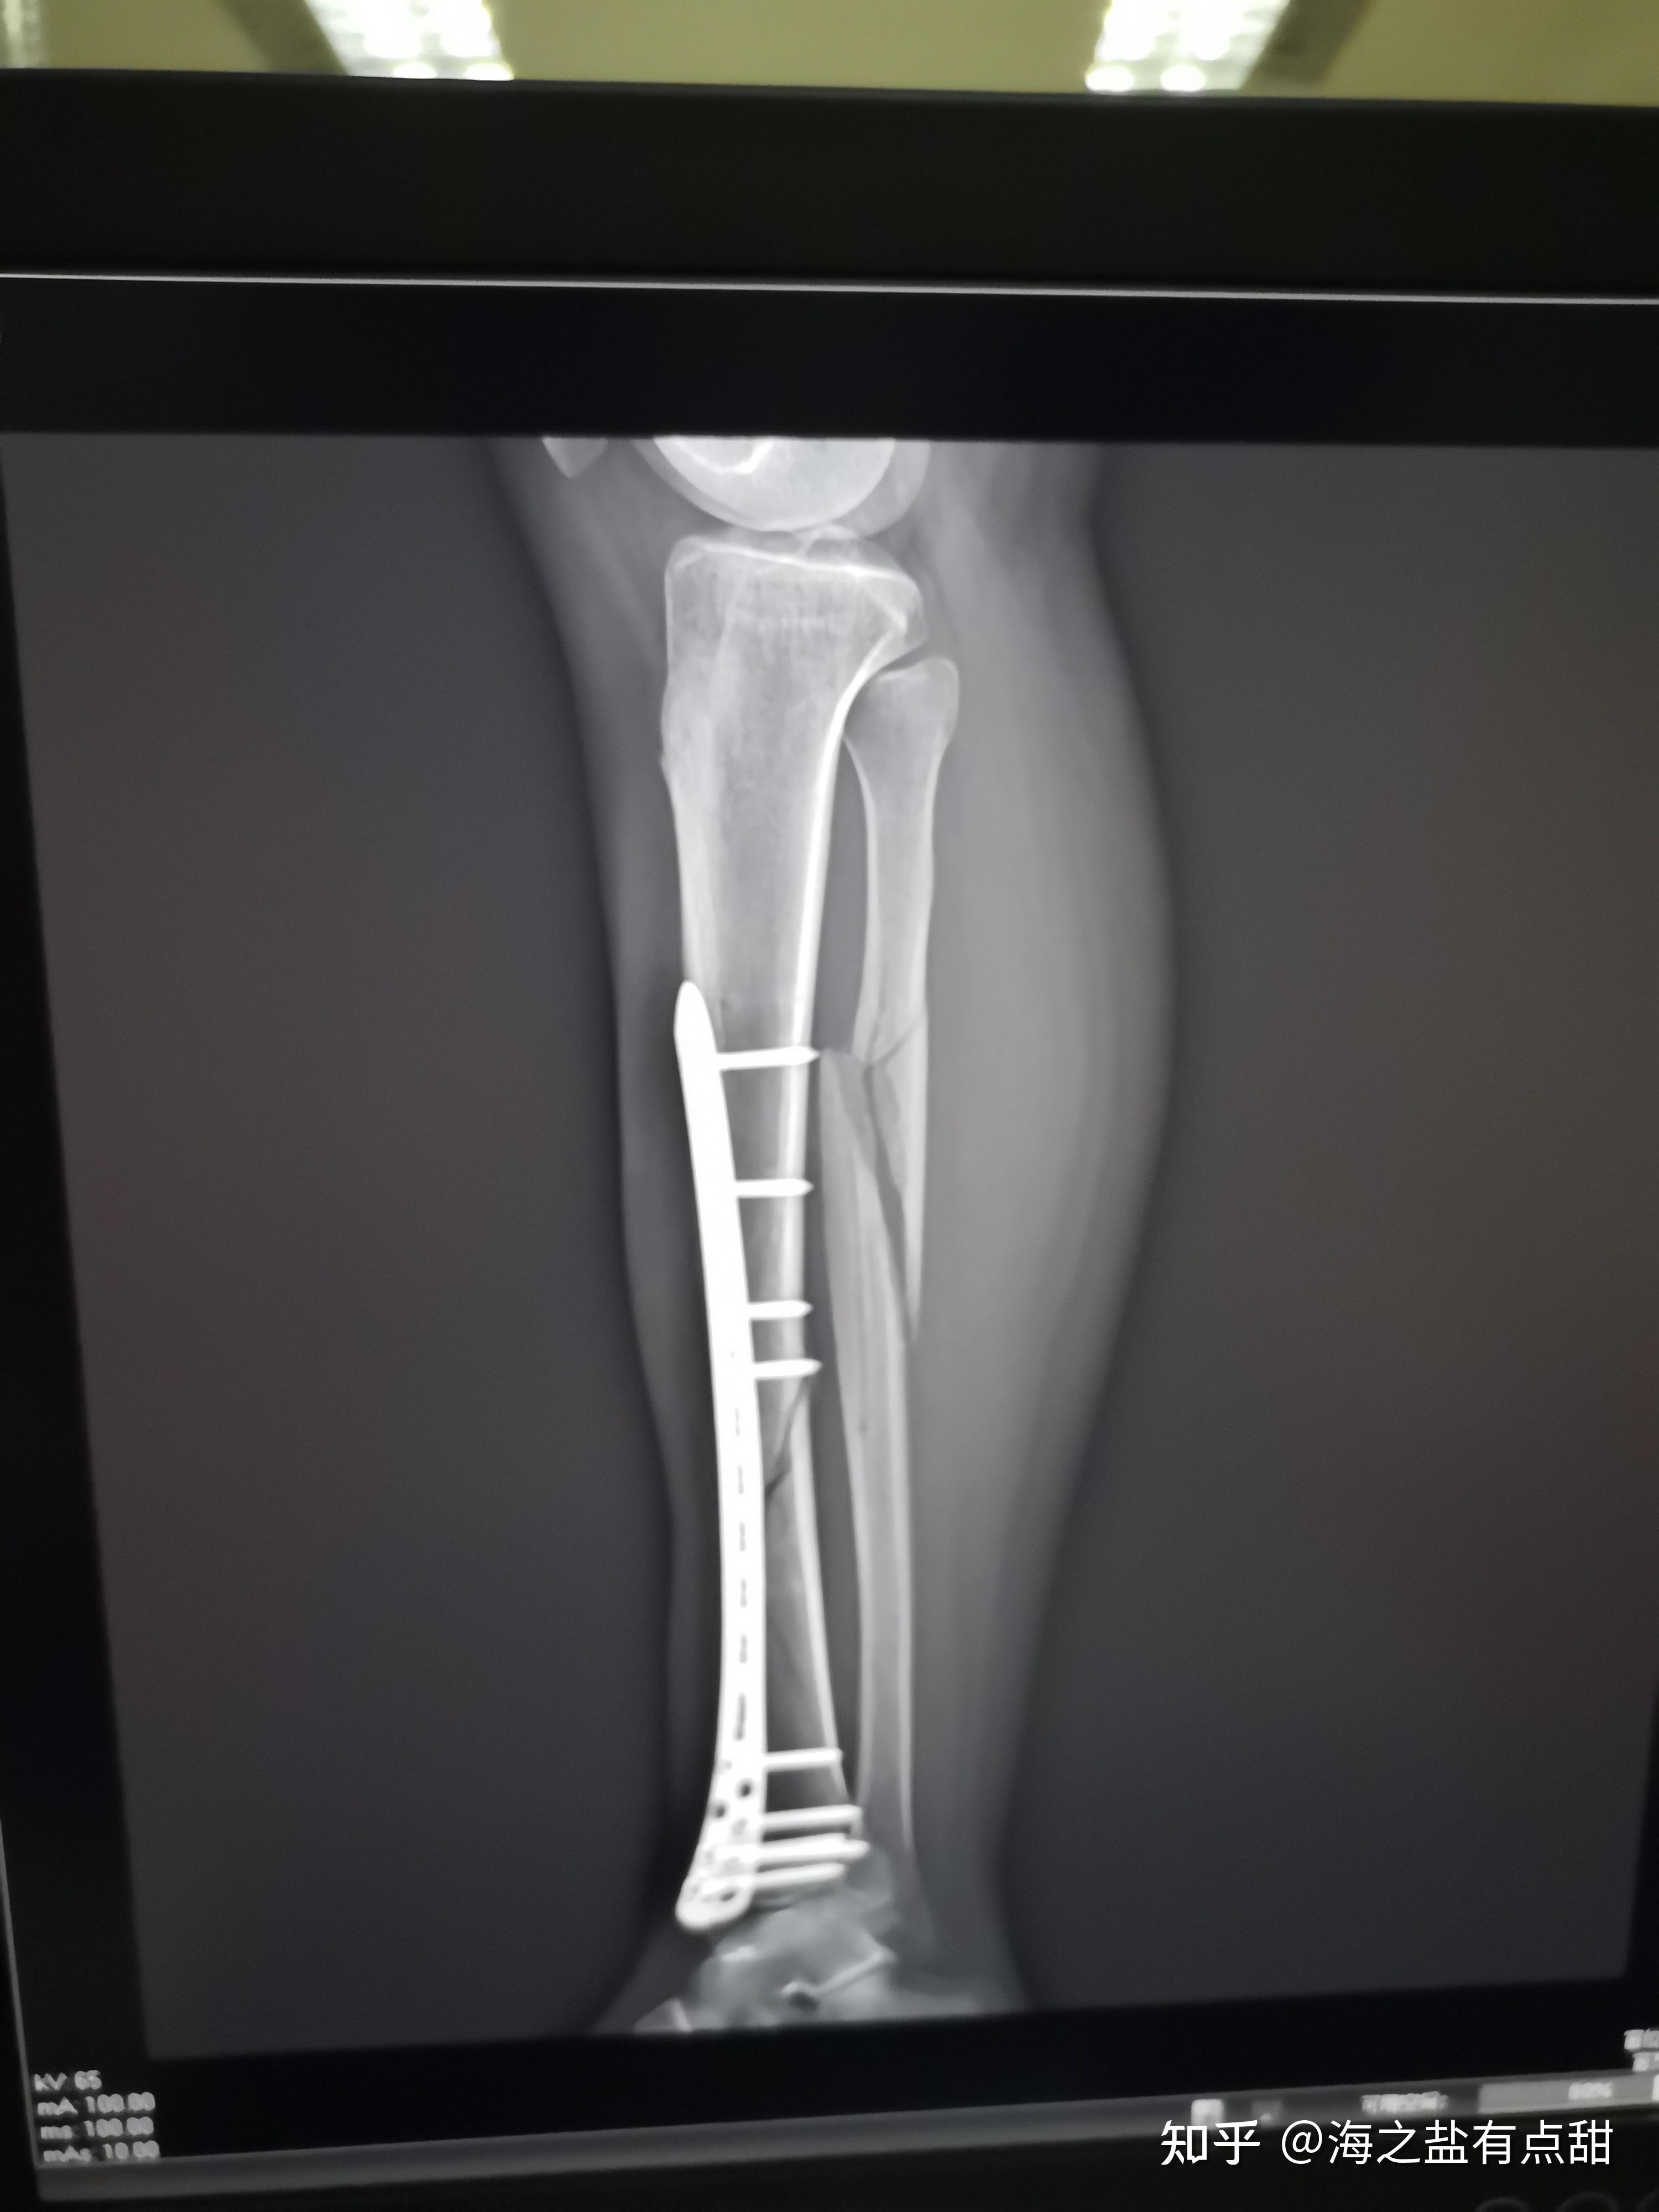 记录小腿胫腓骨骨折经历